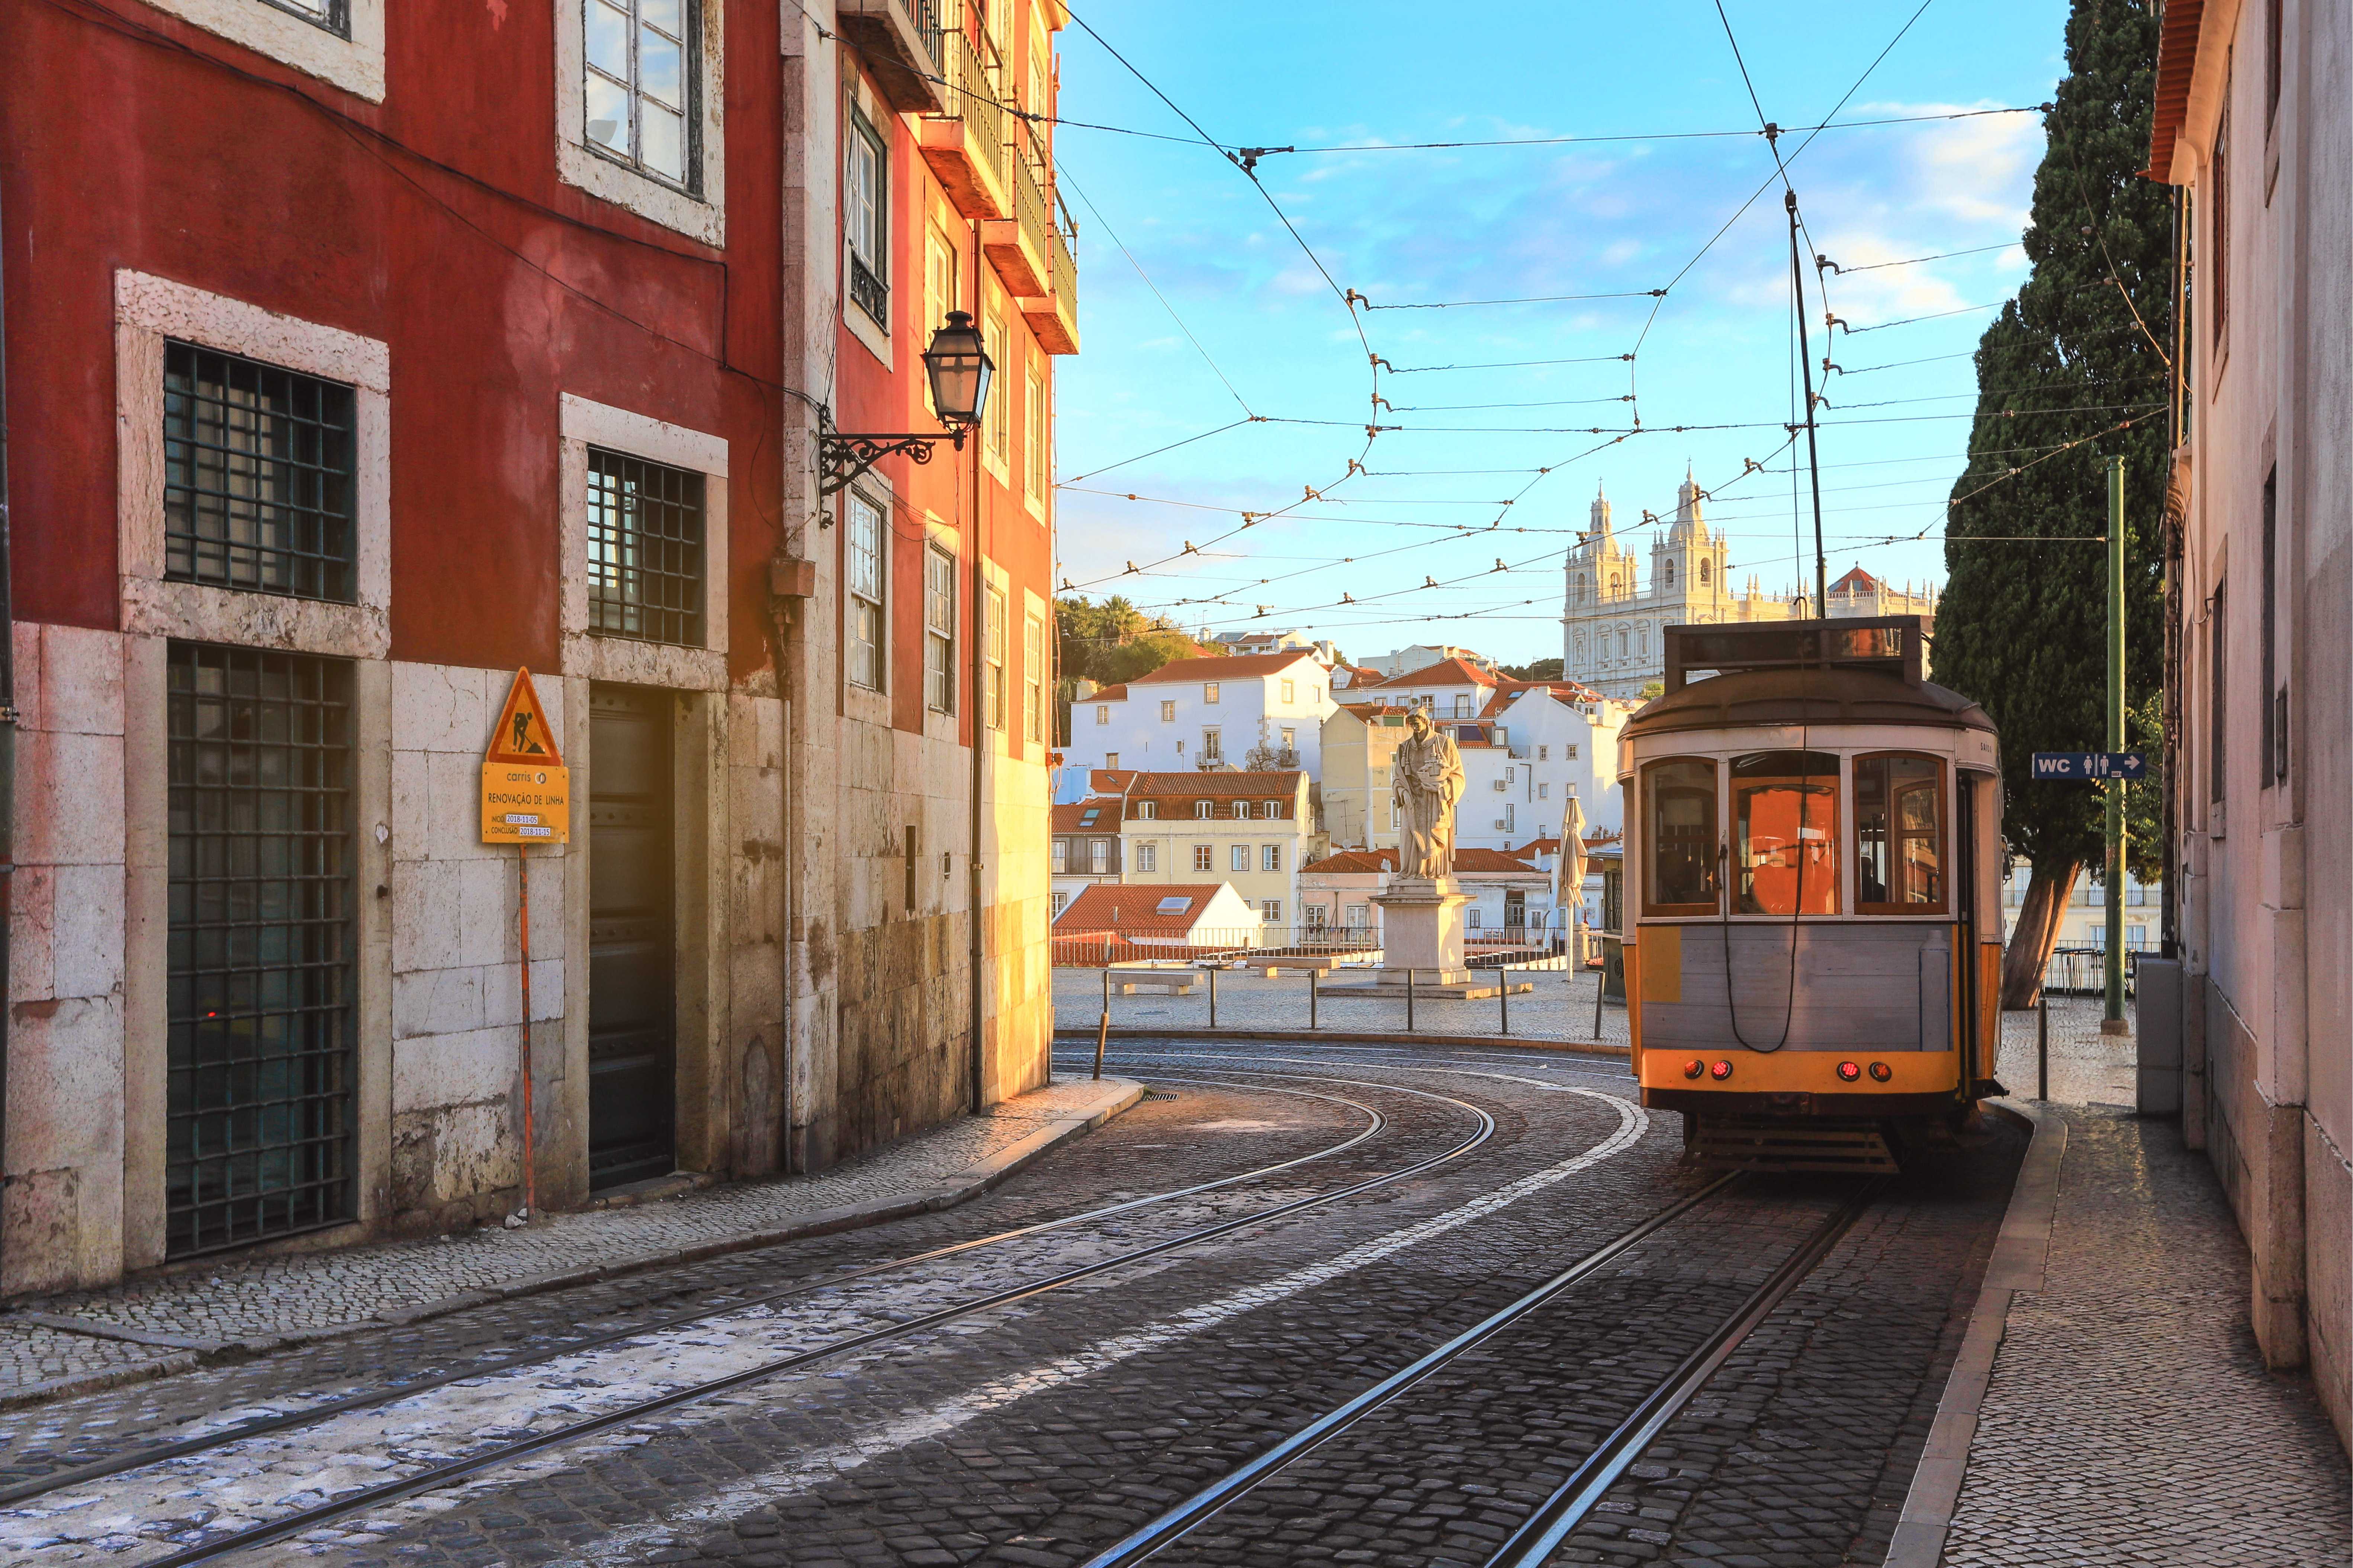 Emprego em Portugal: 5 formas práticas de buscar oportunidades no país